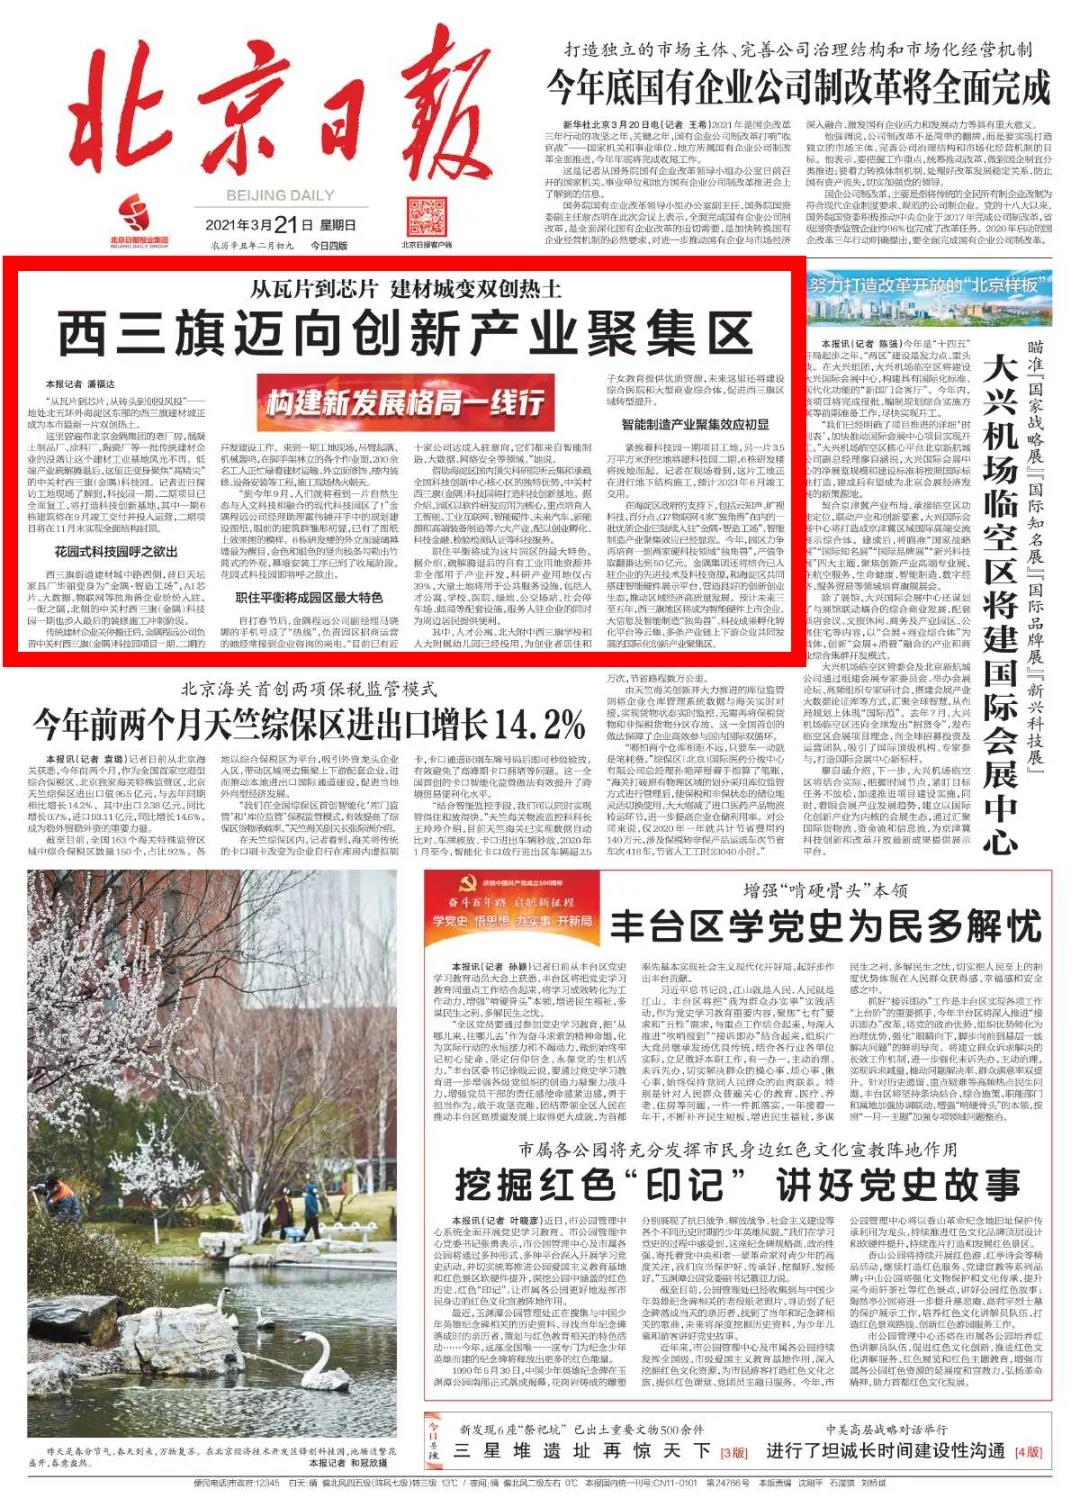 3月21日北京日报头版头条报道